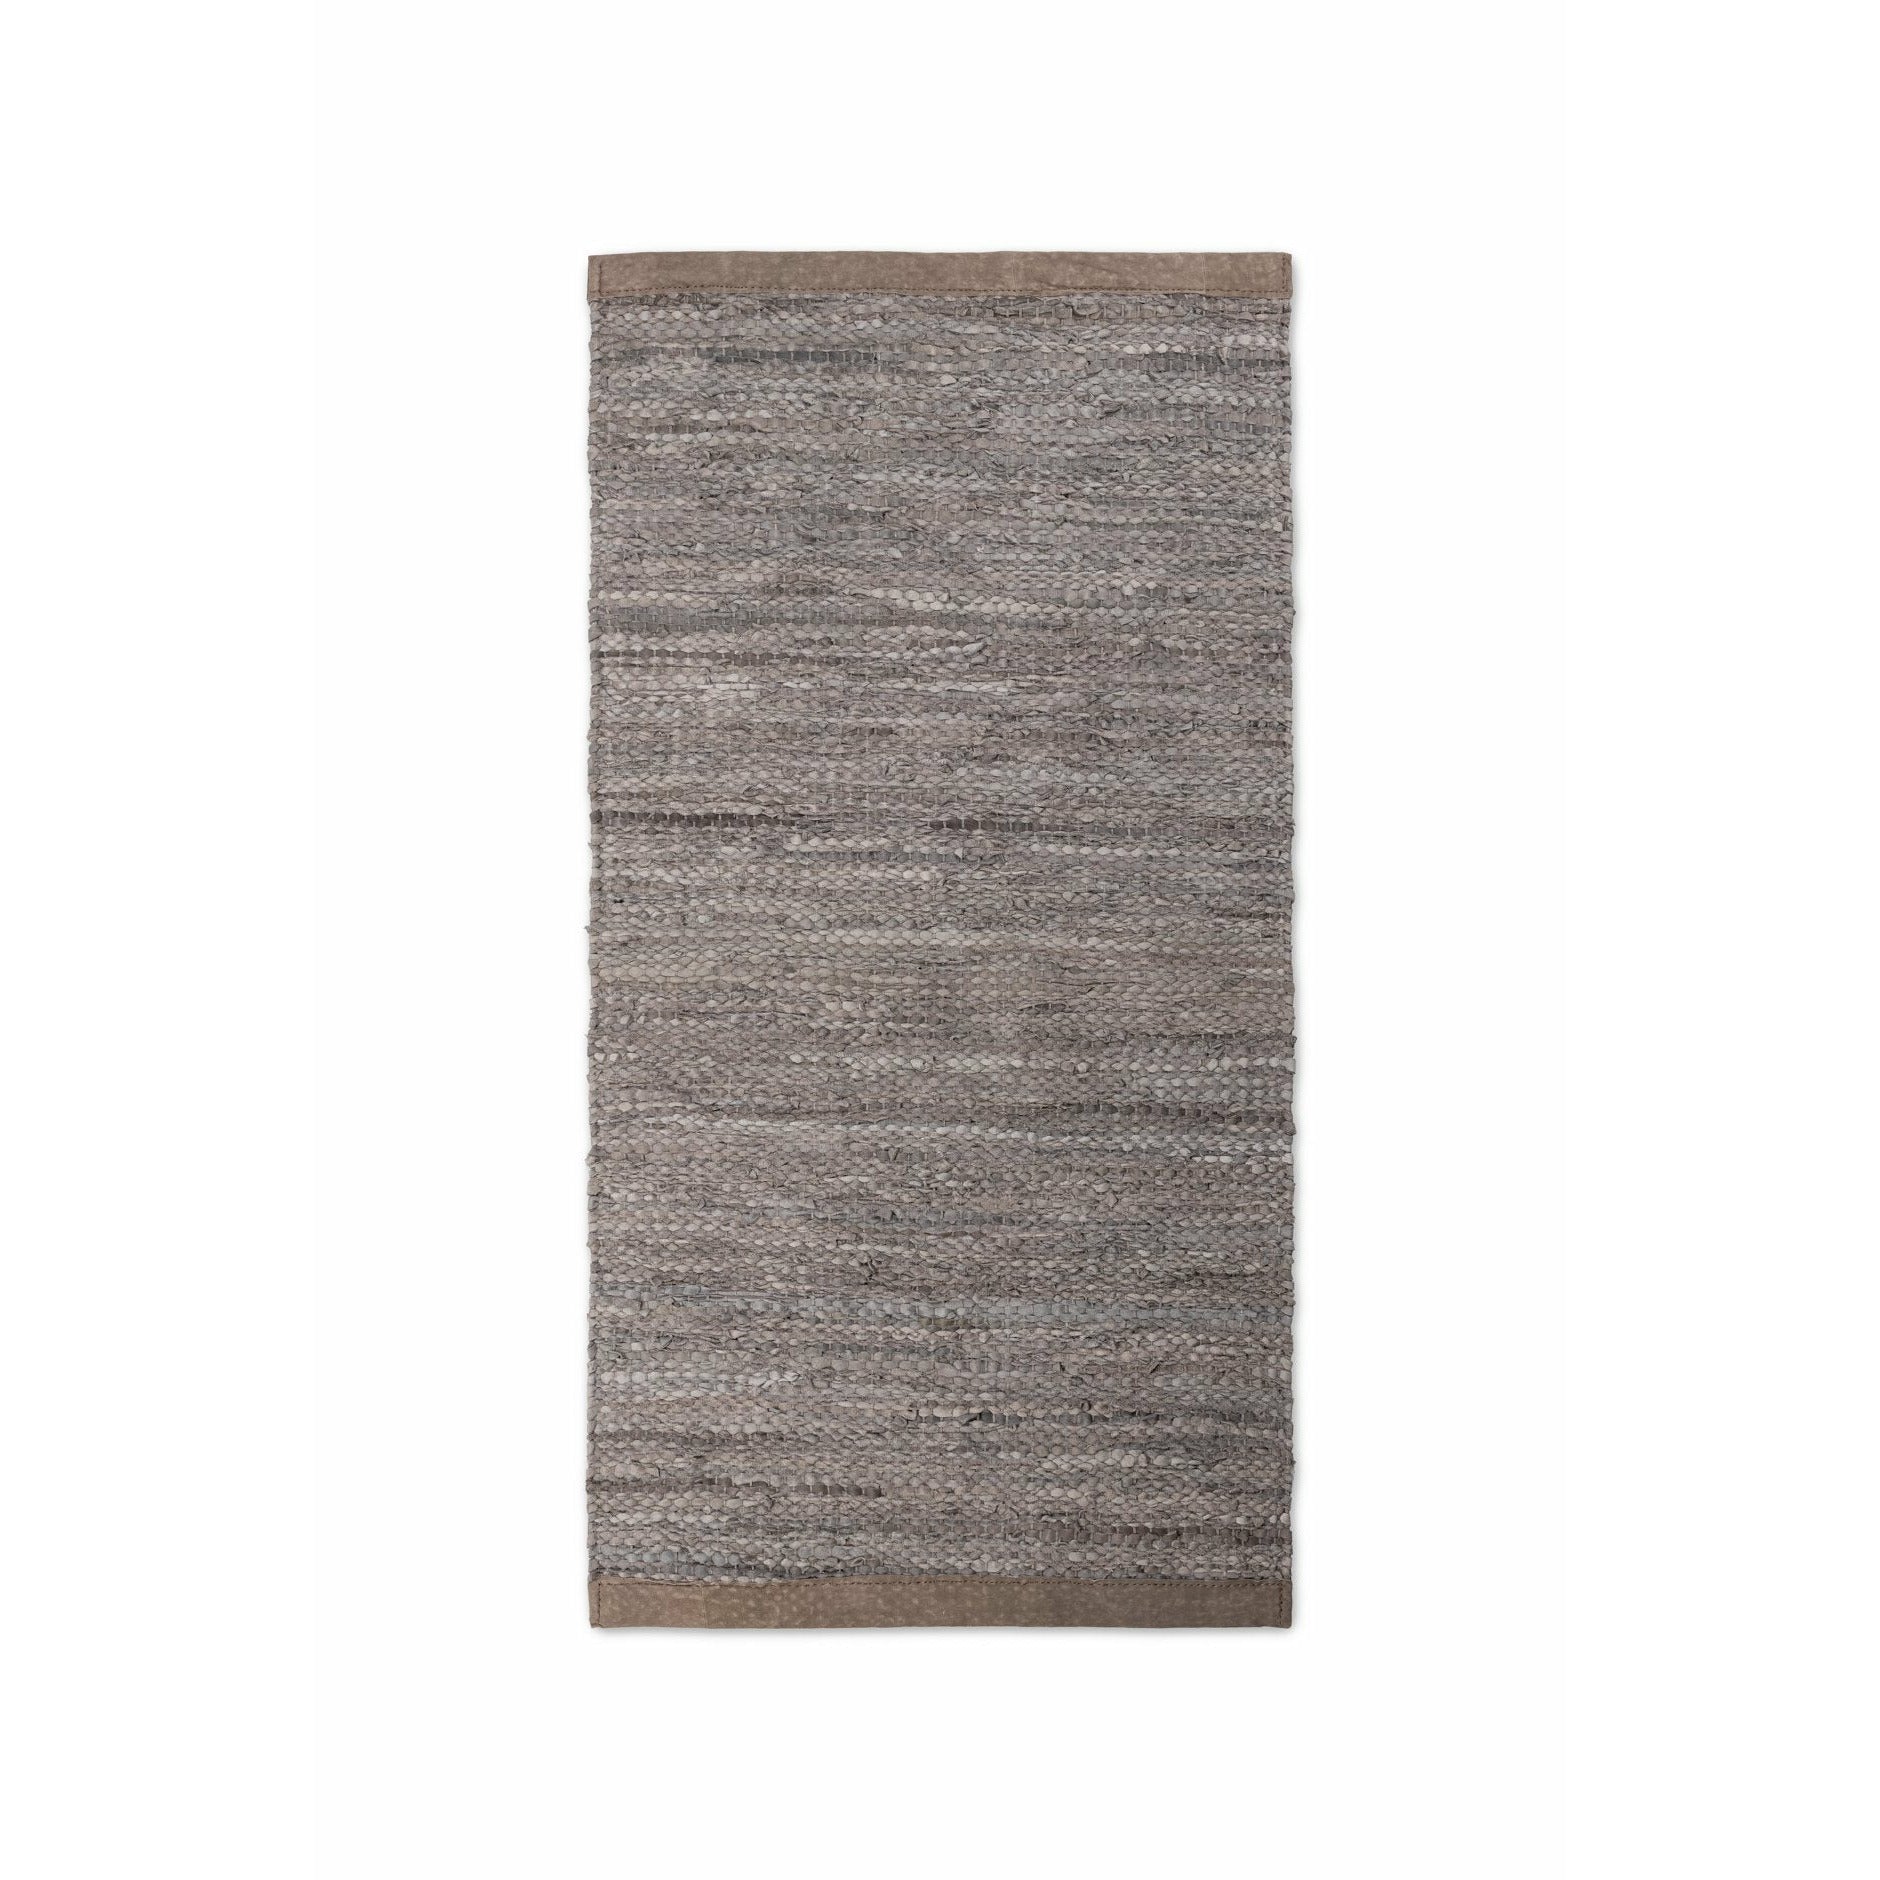 Rug Solid Leder Teppich Holz, 250 X 350 Cm